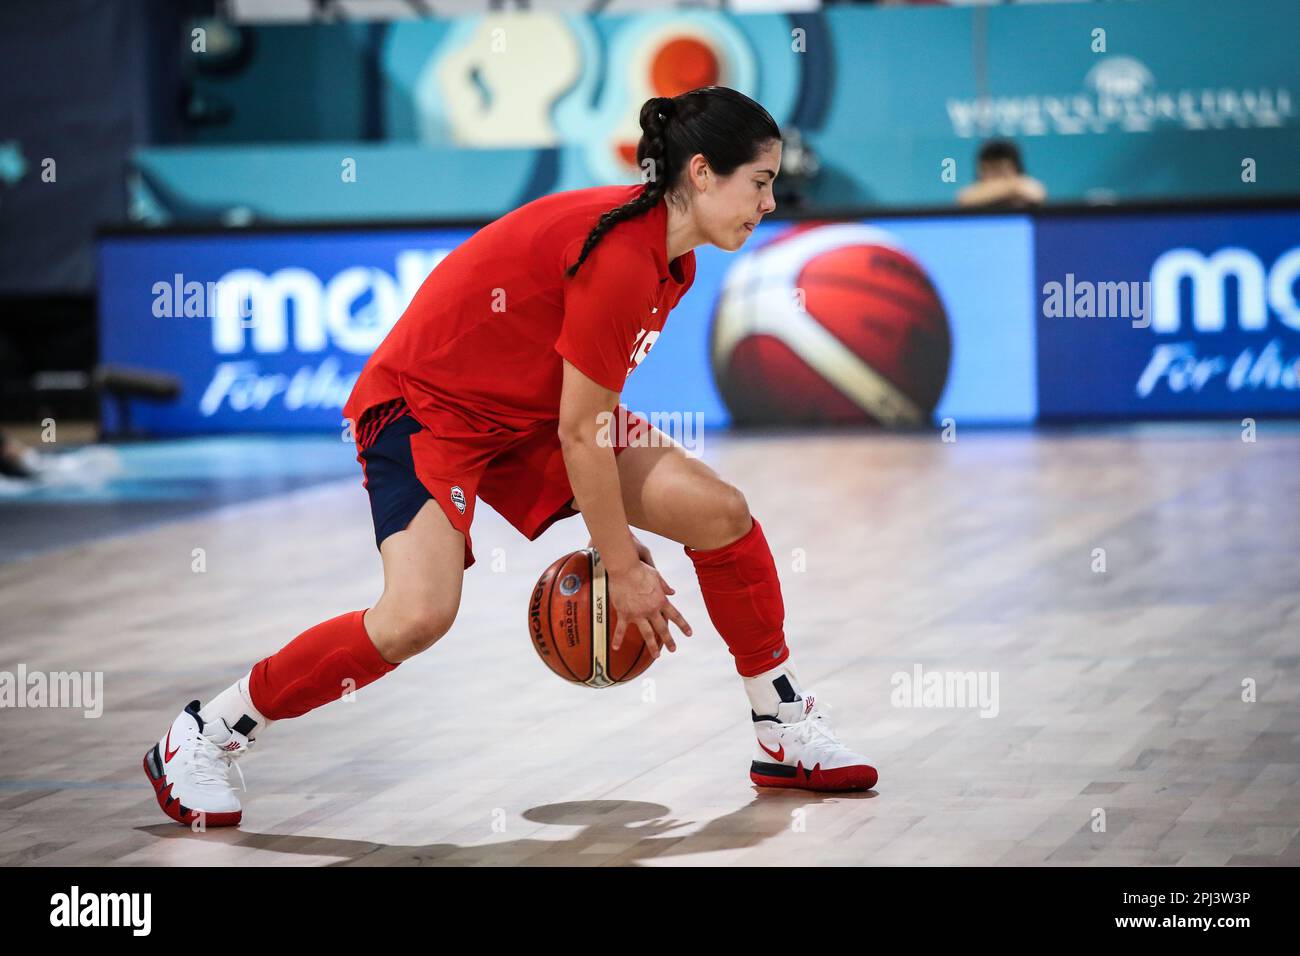 Espagne, Ténérife, 25 septembre 2018: KELSEY Plum, JOUEUSE DE basket-ball AMÉRICAINE, lors de la coupe du monde de basket-ball féminin FIBA 2018 en Espagne. Banque D'Images